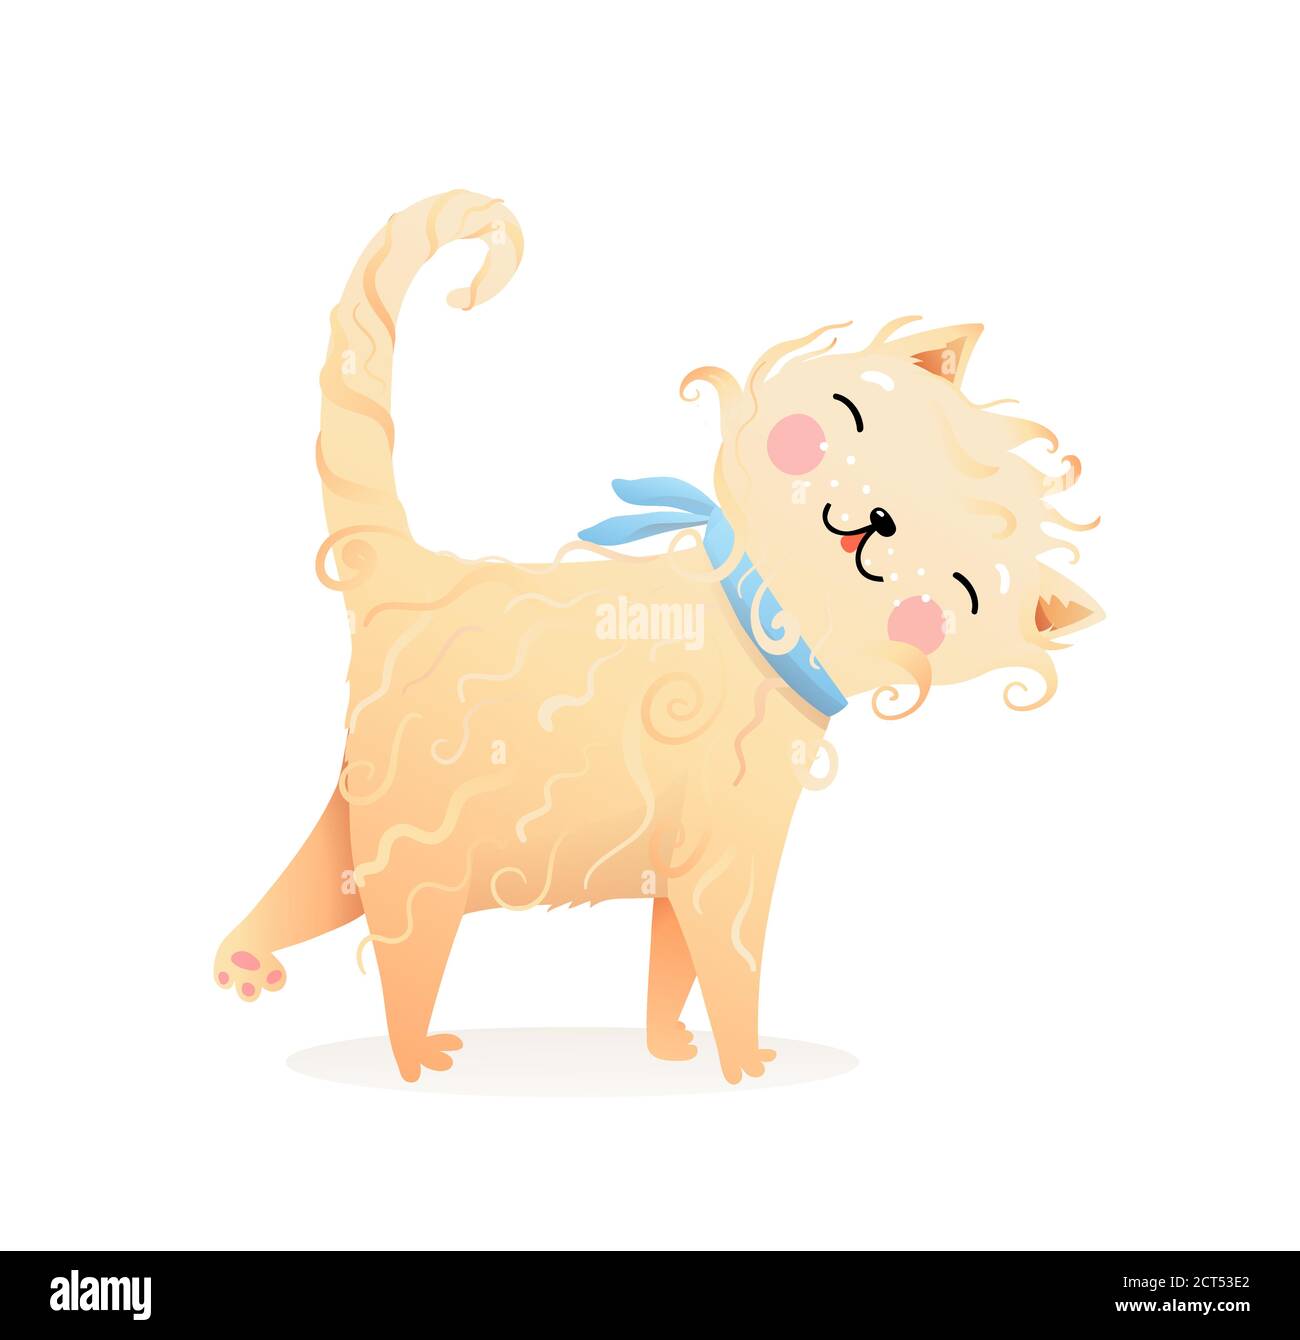 Carino Soft Purr Meow Cat o Kitten Cartoon per bambini Illustrazione Vettoriale